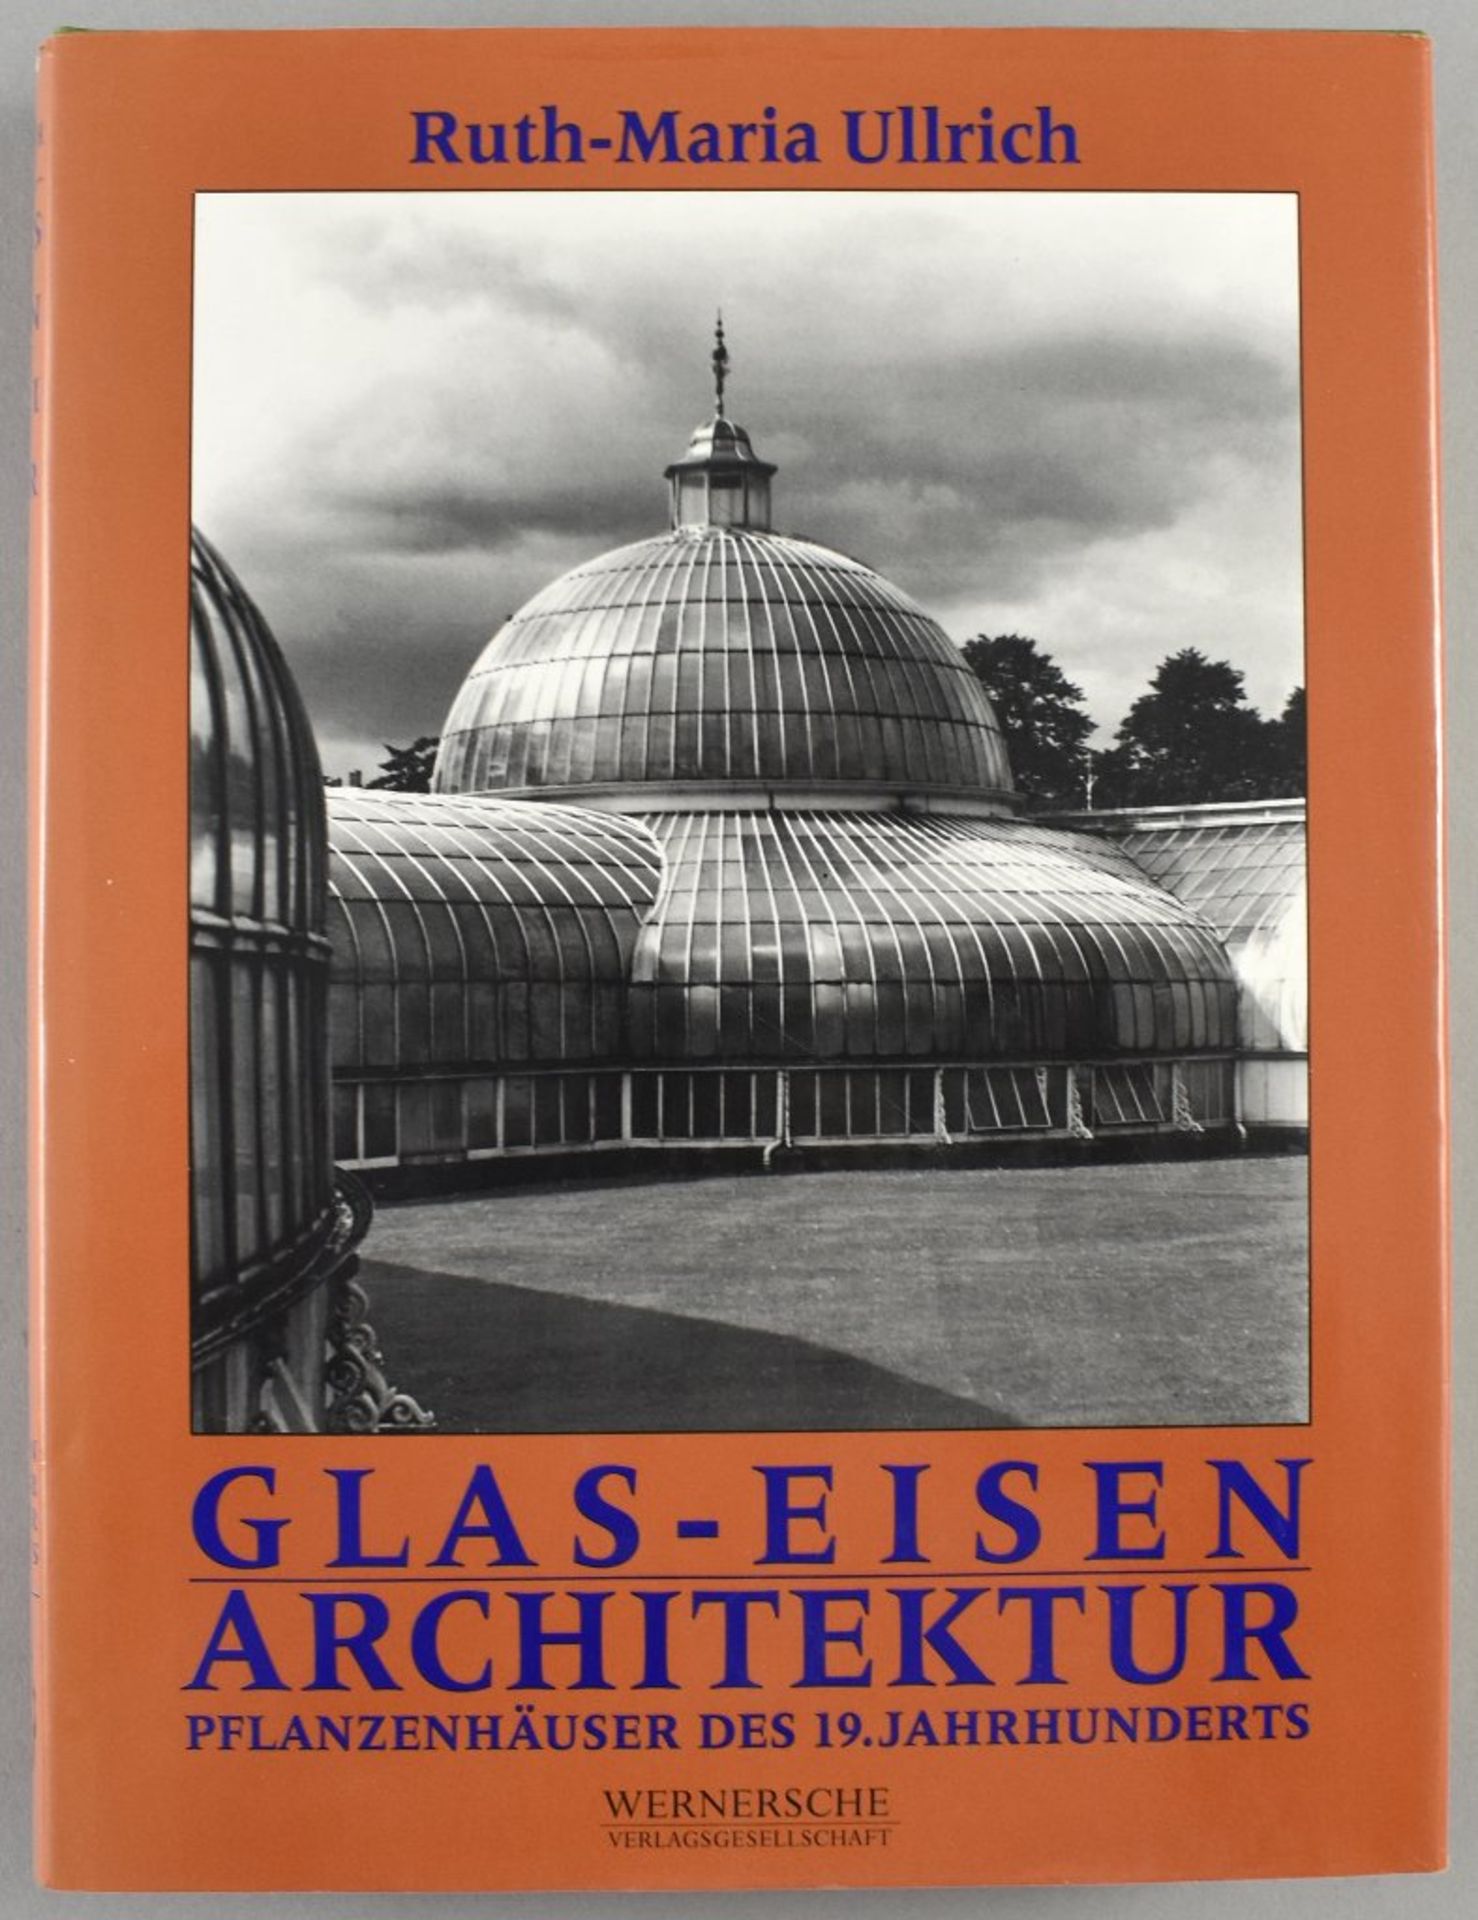 Ullrich, Ruth-Maria. Glas-Eisen Architektur. Pflanzenhäuser des 19. Jahrhunderts. Wernersche